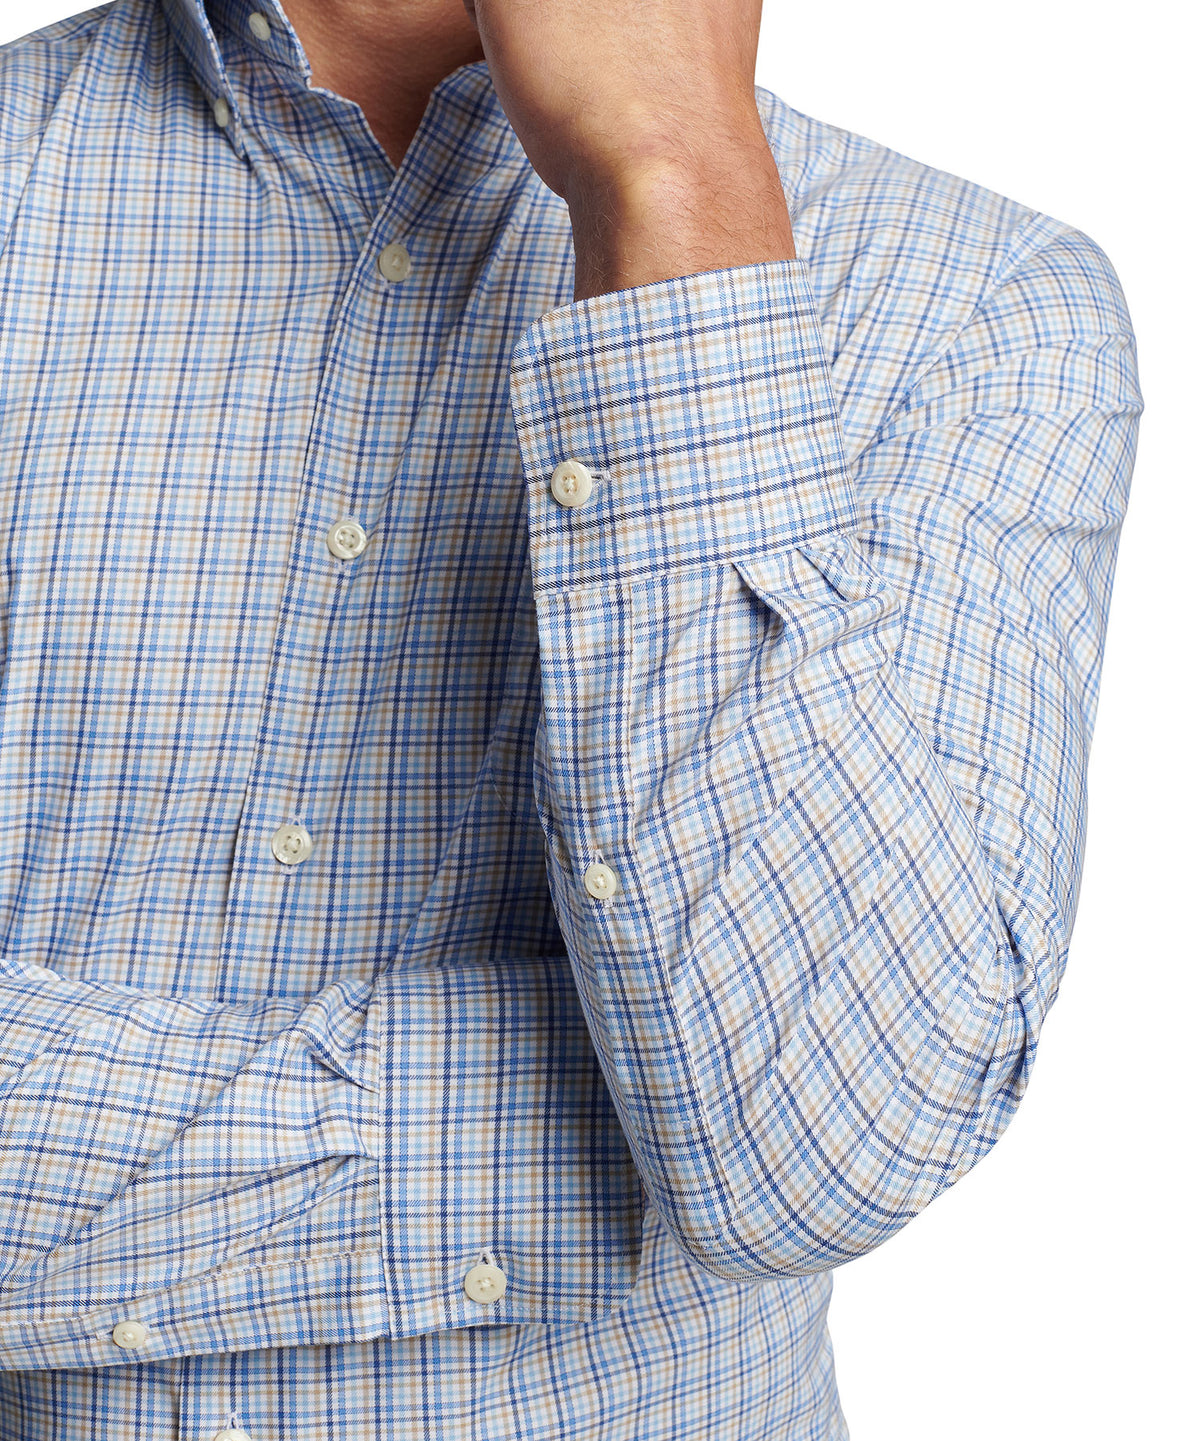 Peter Millar Long Sleeve Cutler Button-Down Collar Patterned Sport Shirt, Big & Tall